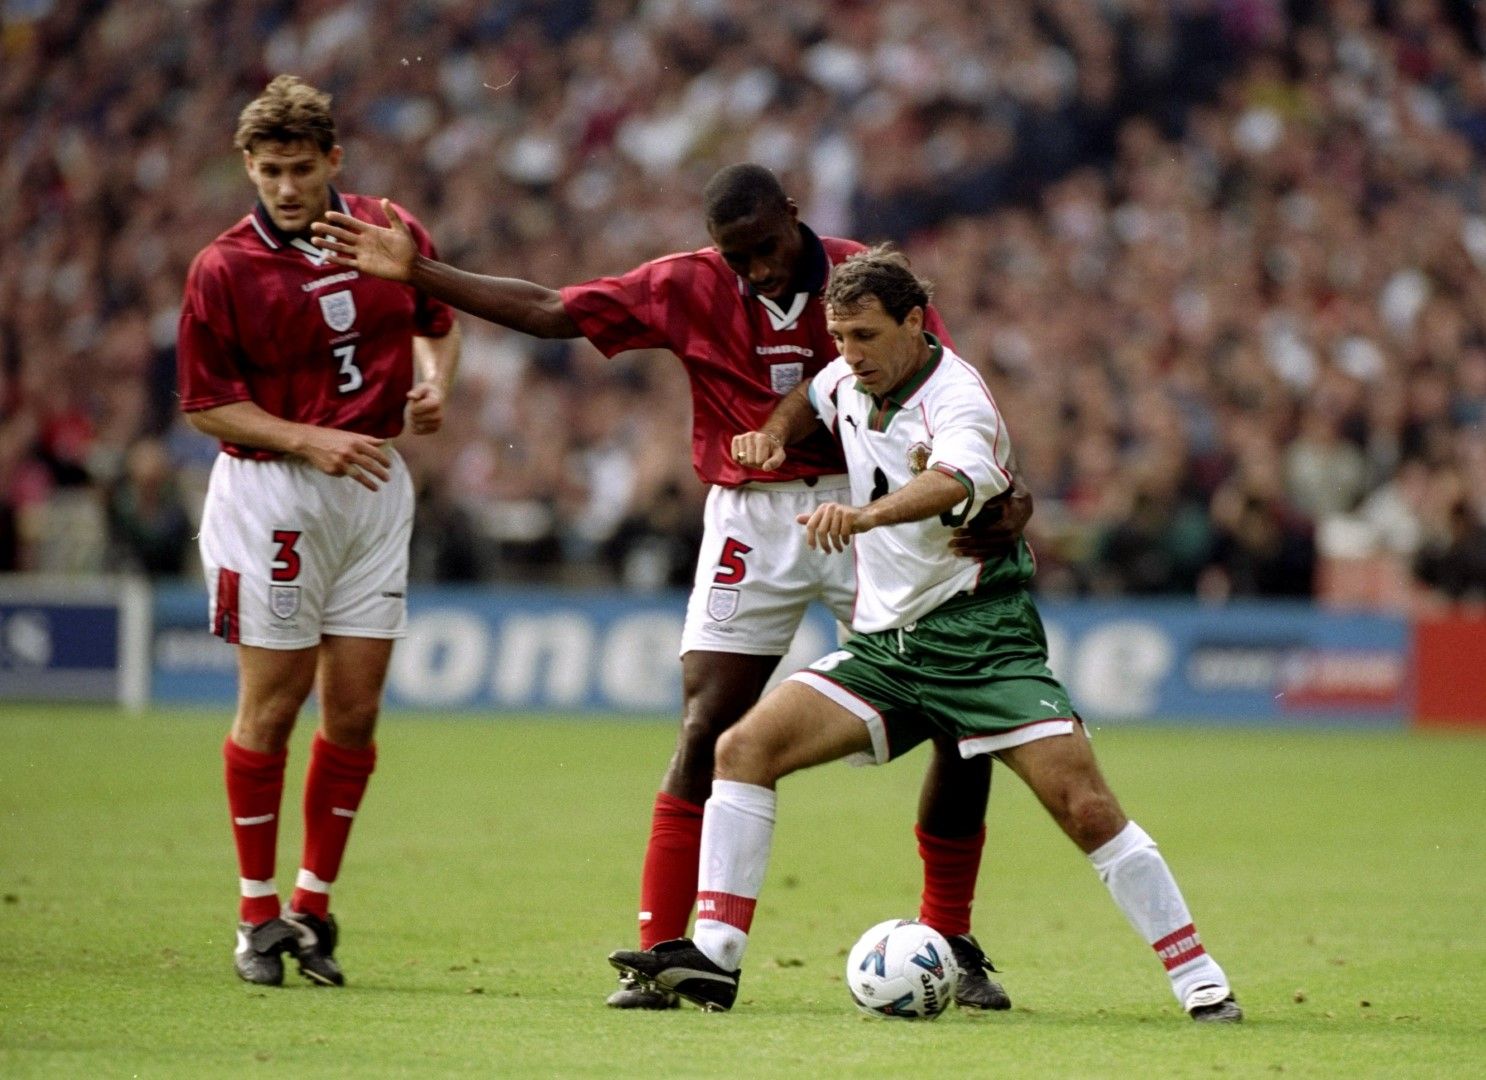 1998 г., отново на "Уембли". Христо Стоичков се бори със Сол Кембъл, а Анди Хинчклиф гледа отблизо. Удържахме 0:0 в Лондон в европейска квалификация.